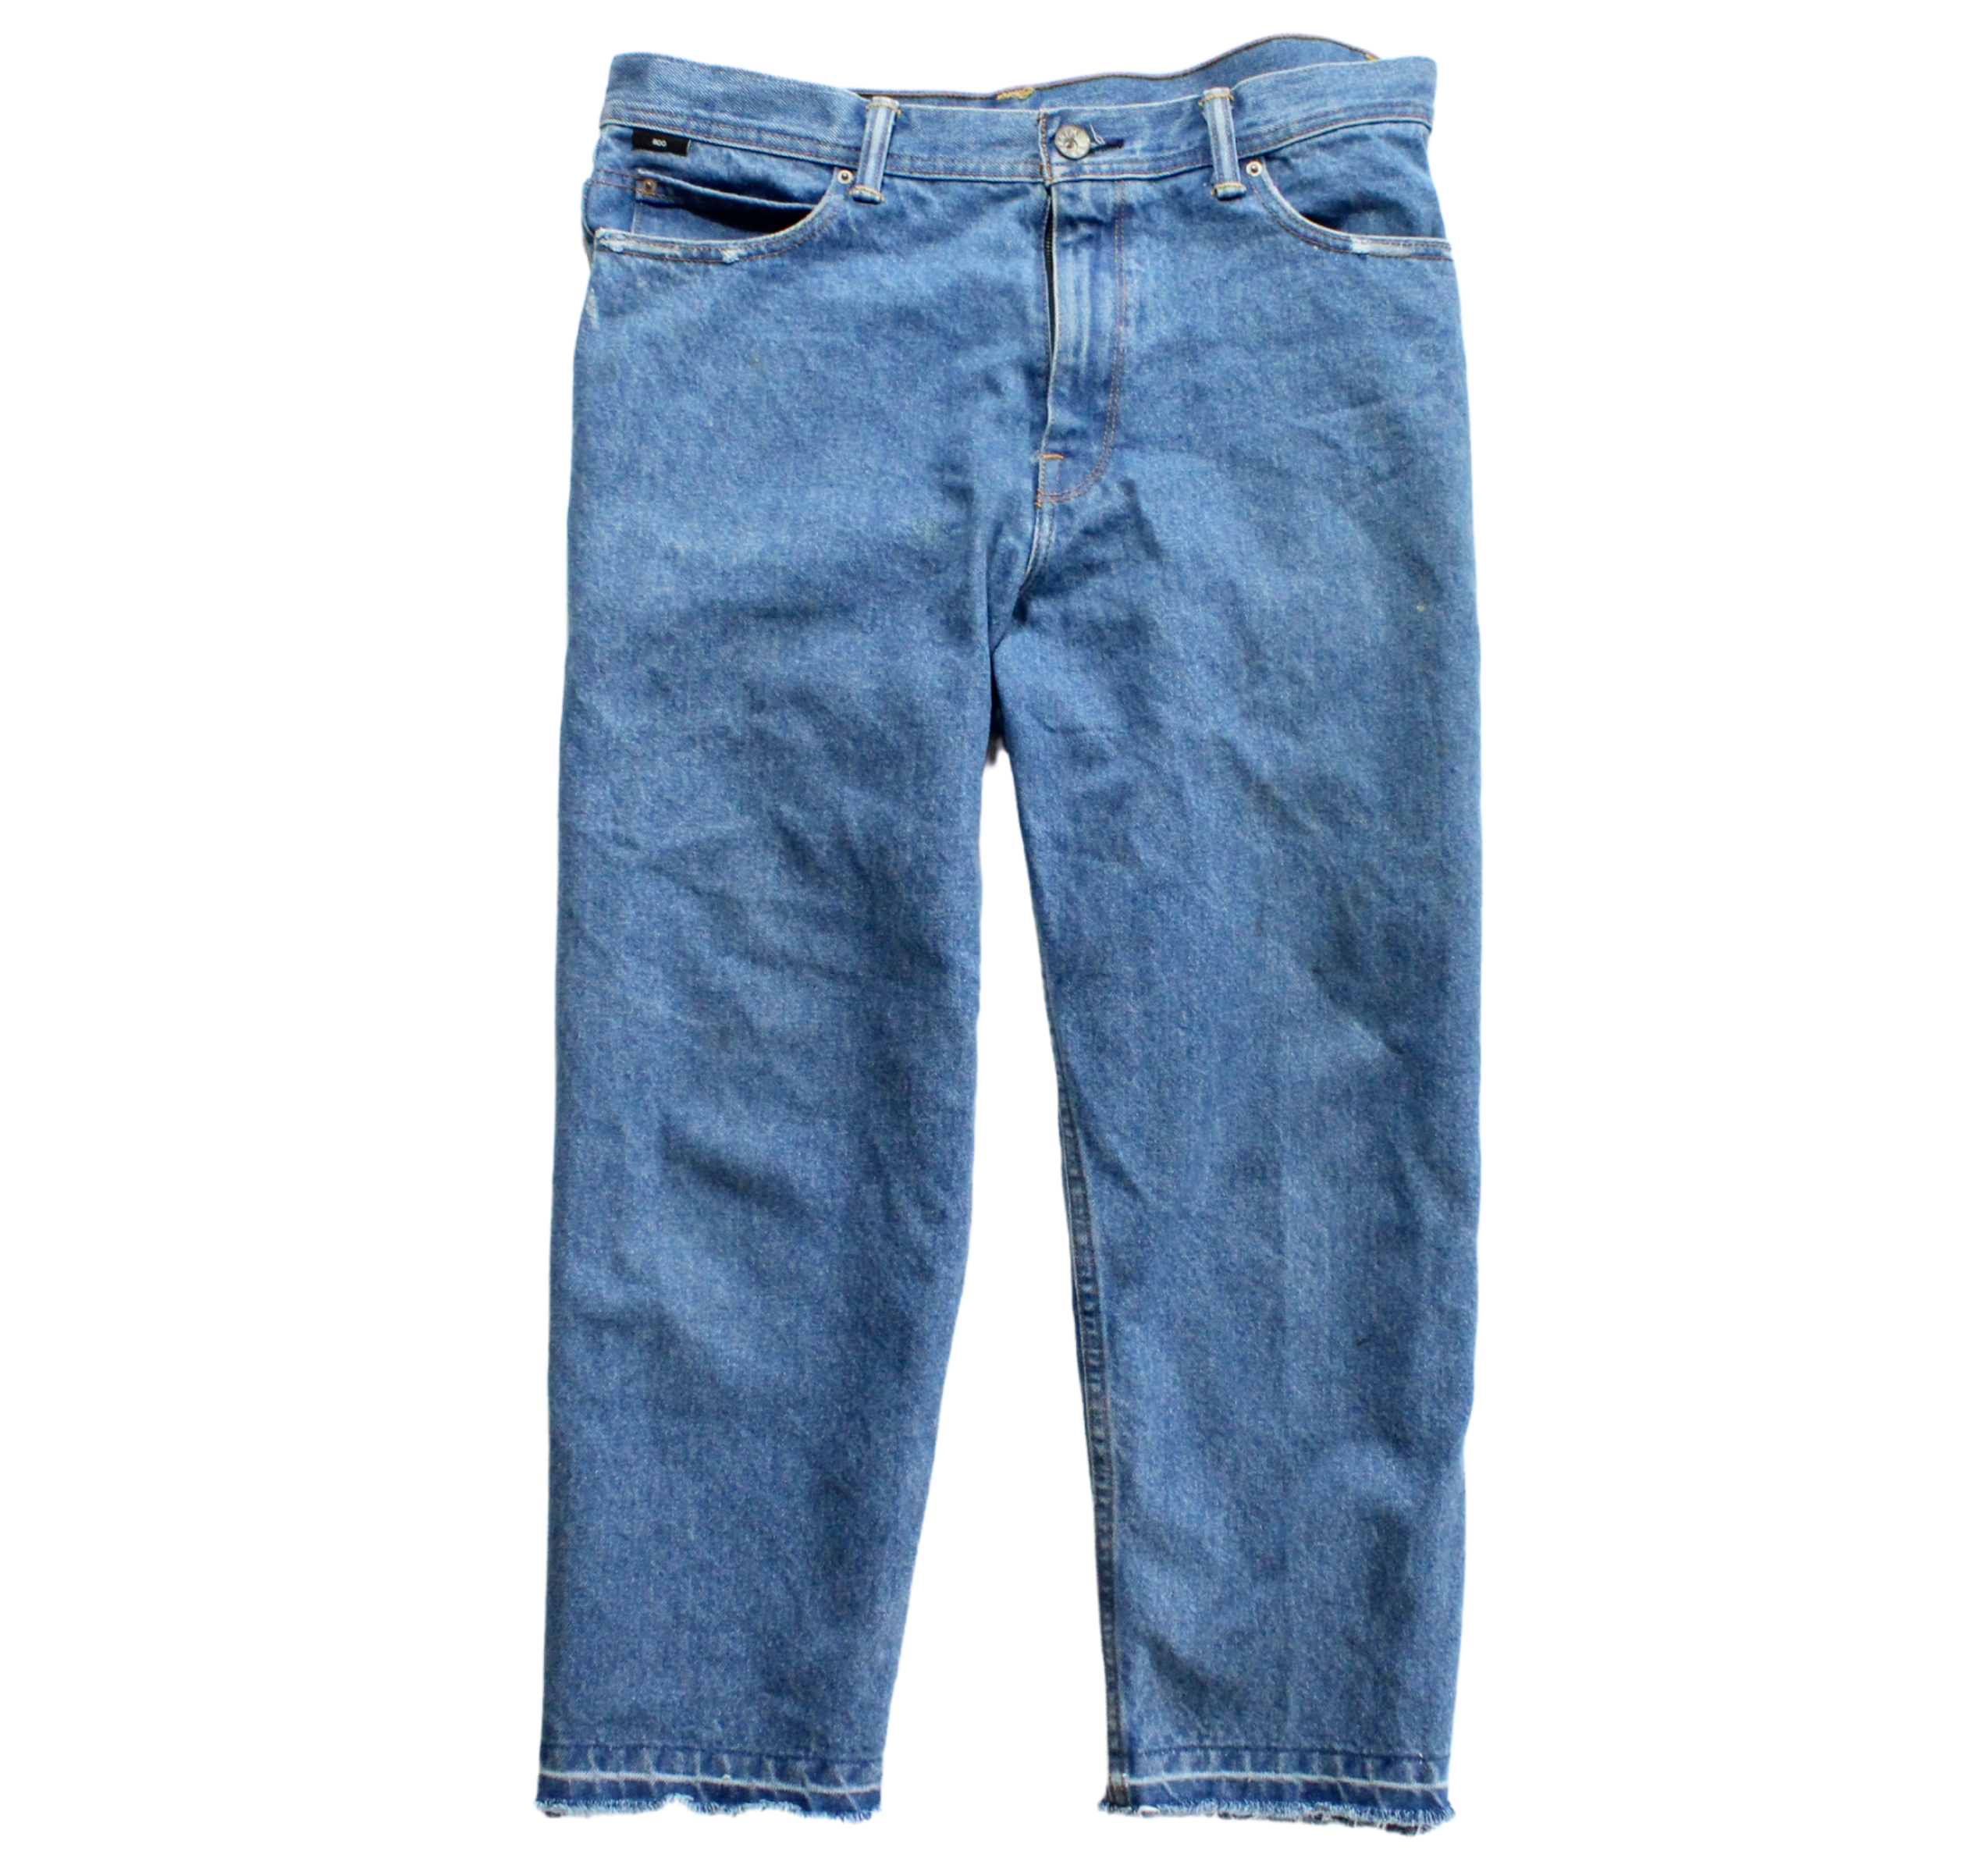 Gavin Bennett's Jeans